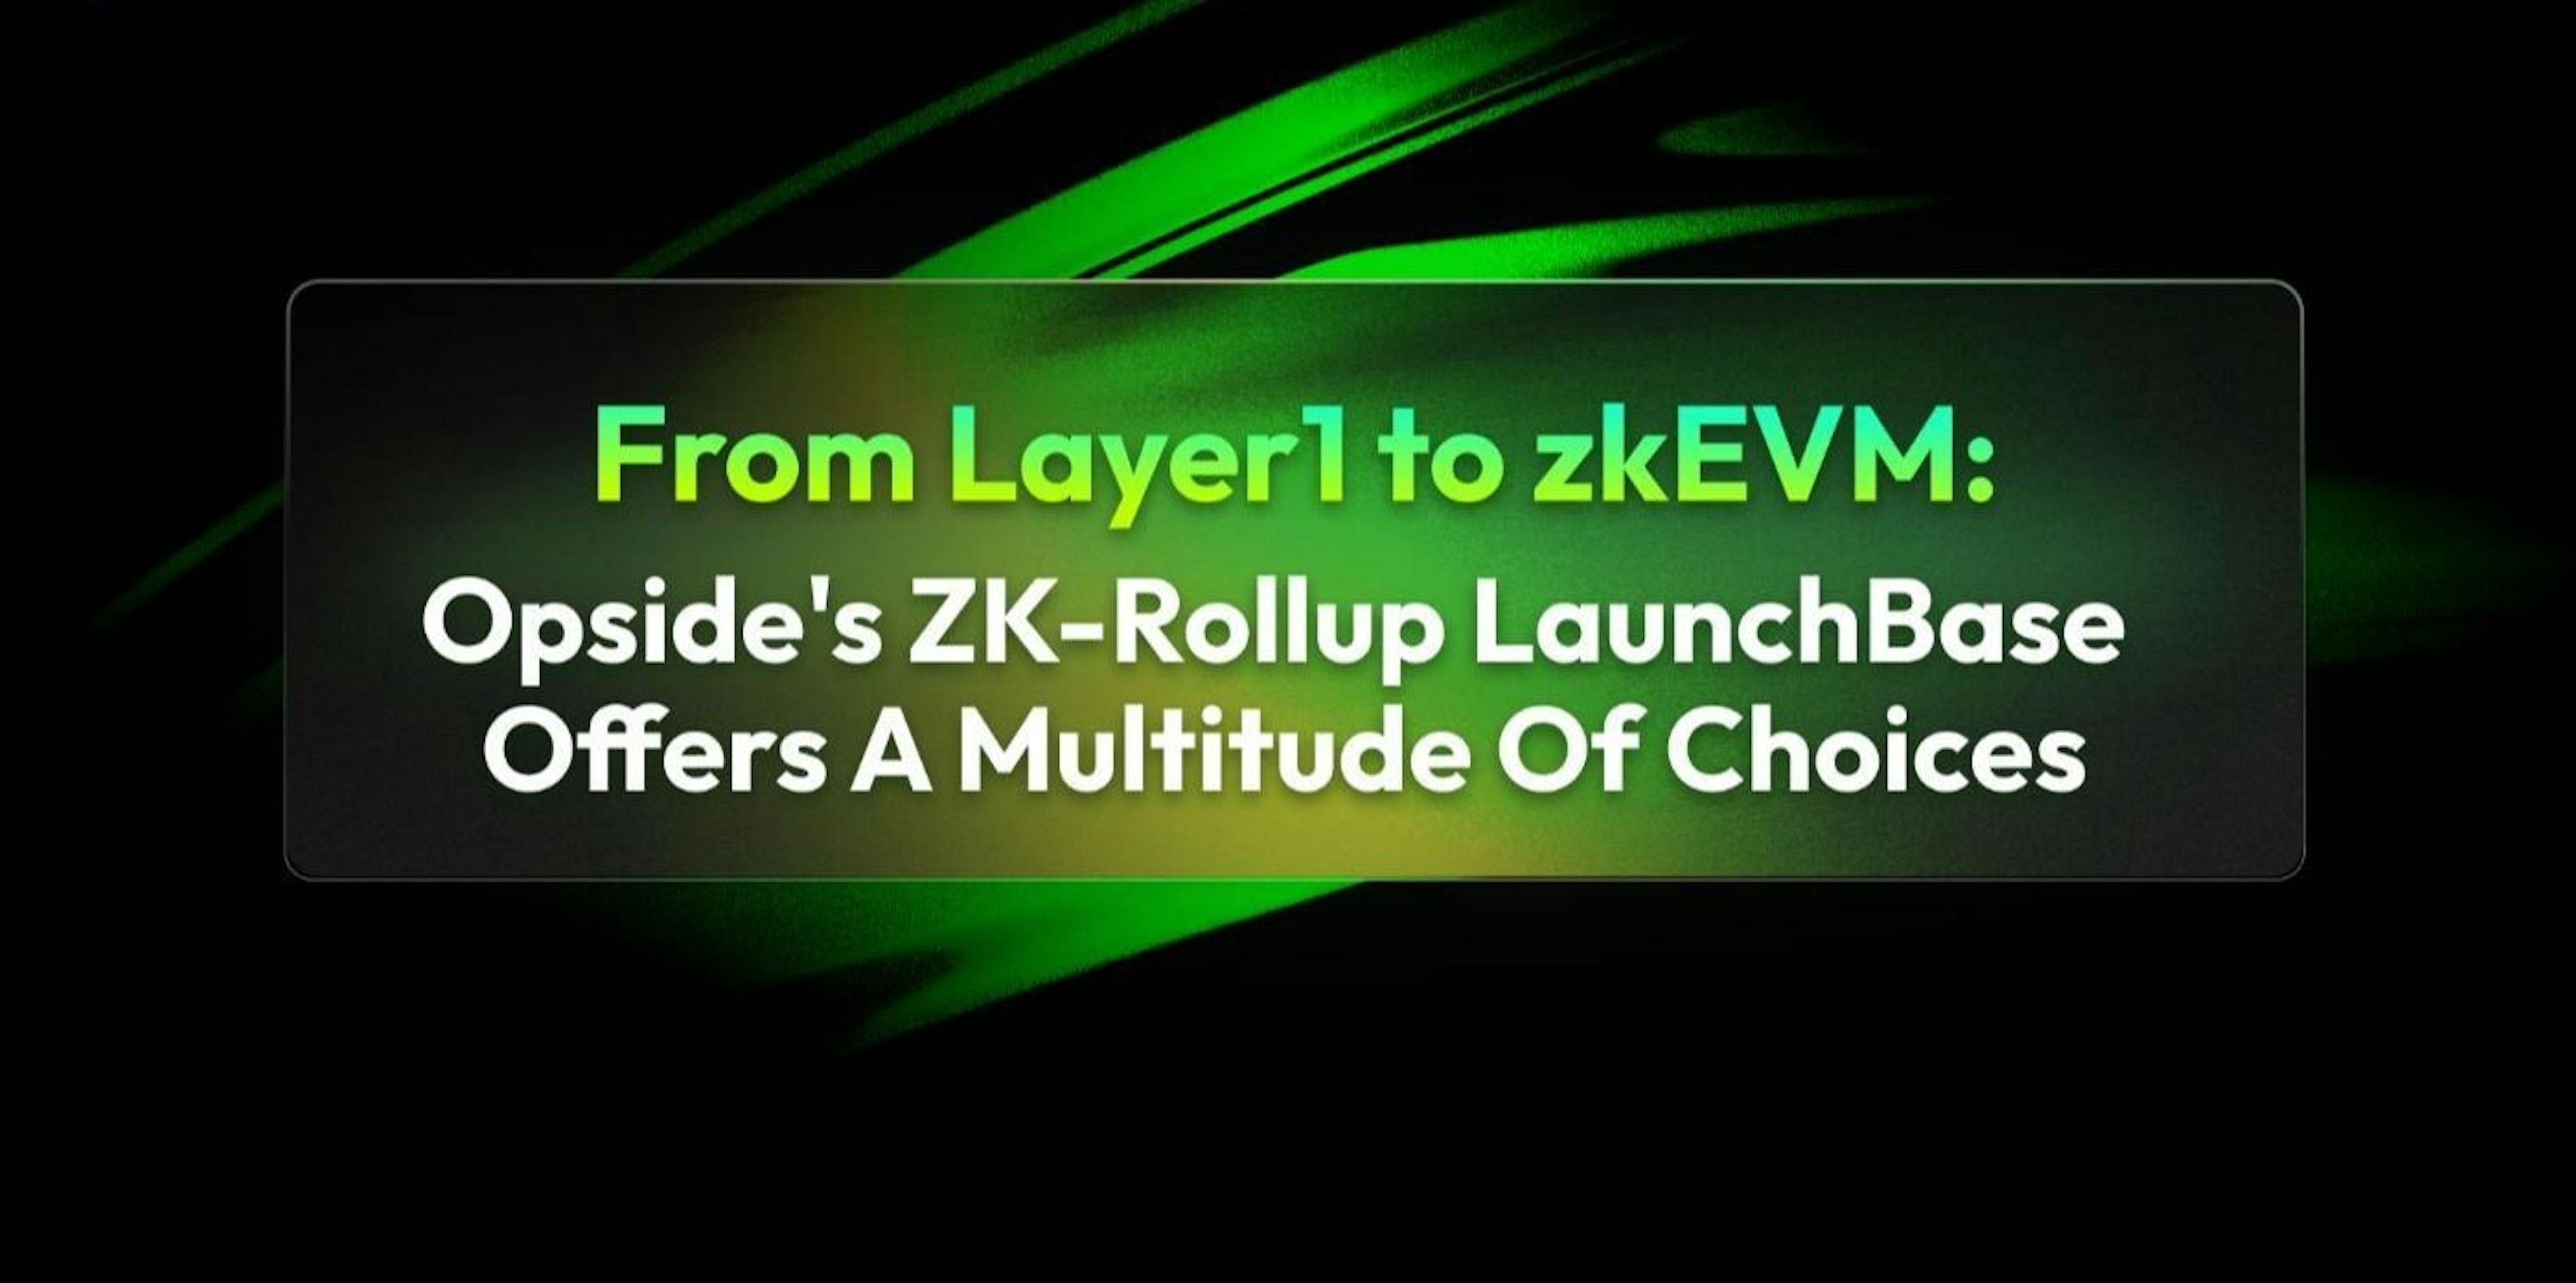 featured image - De Layer1 à zkEVM : ZK-Rollup LaunchBase d'Opside offre une pléthore de choix